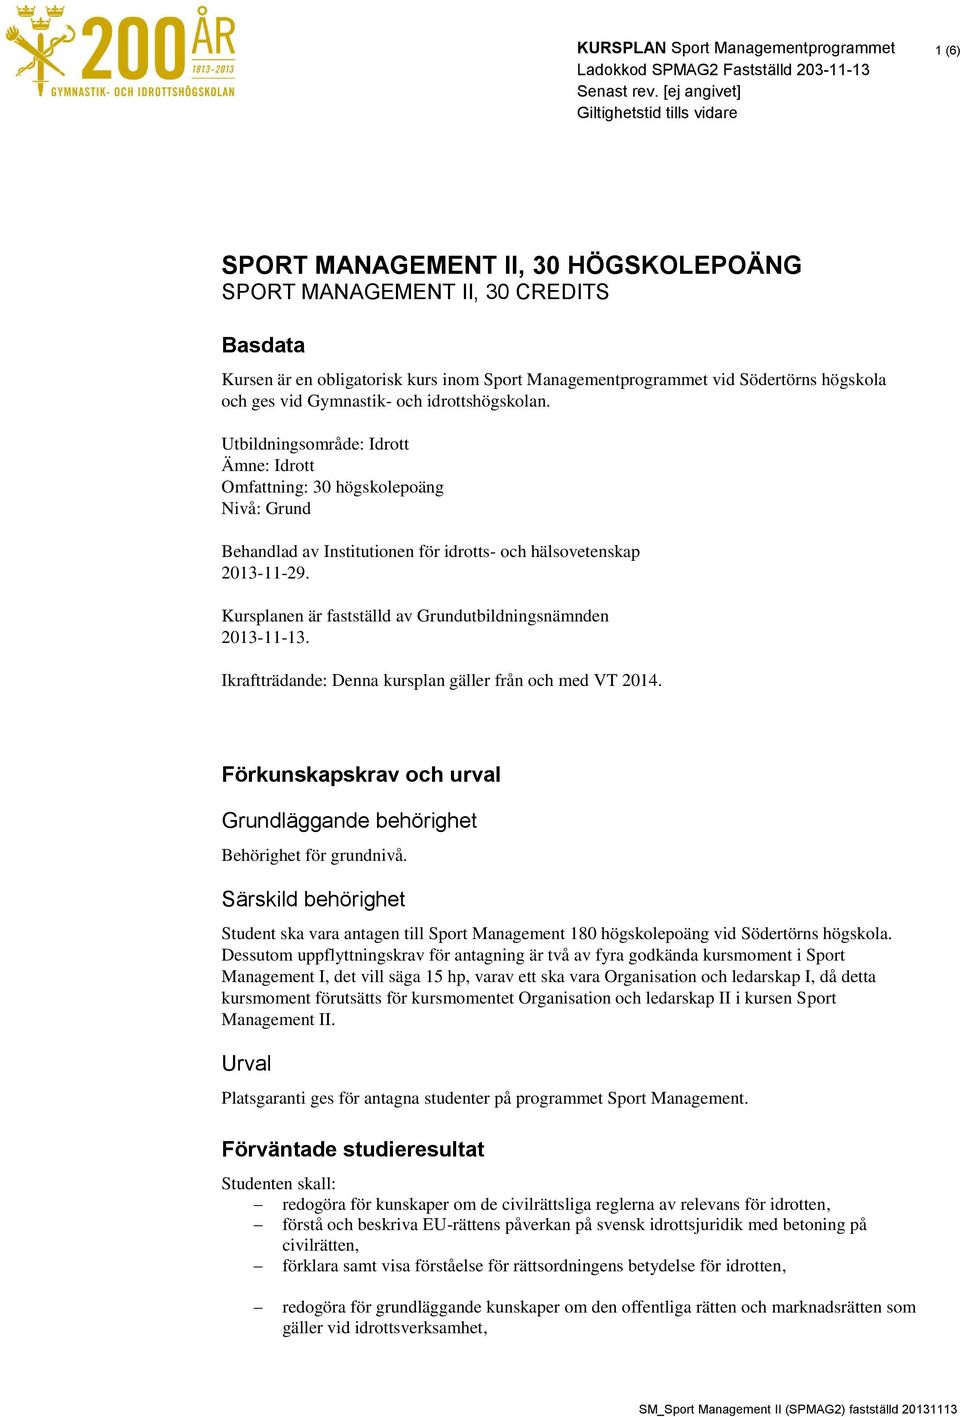 Utbildningsområde: Idrott Ämne: Idrott Omfattning: 30 högskolepoäng Nivå: Grund Behandlad av Institutionen för idrotts- och hälsovetenskap 2013-11-29.